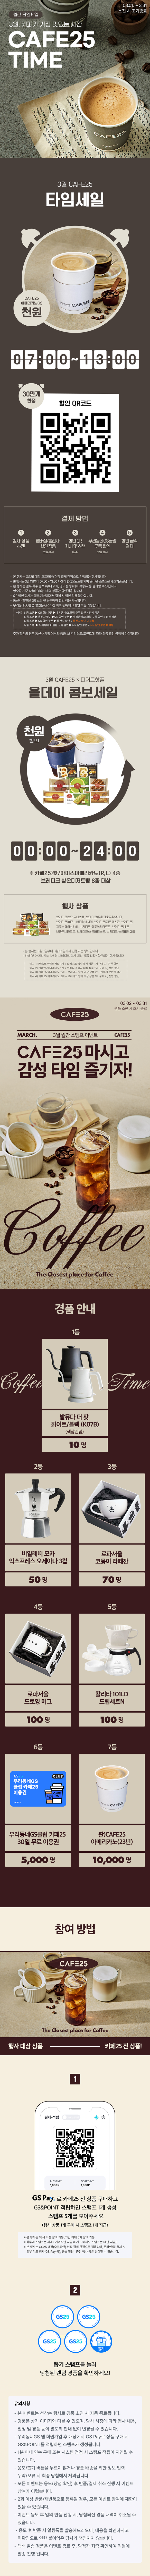 커피가 가장 맛있는 시간 CAFE25 TIME